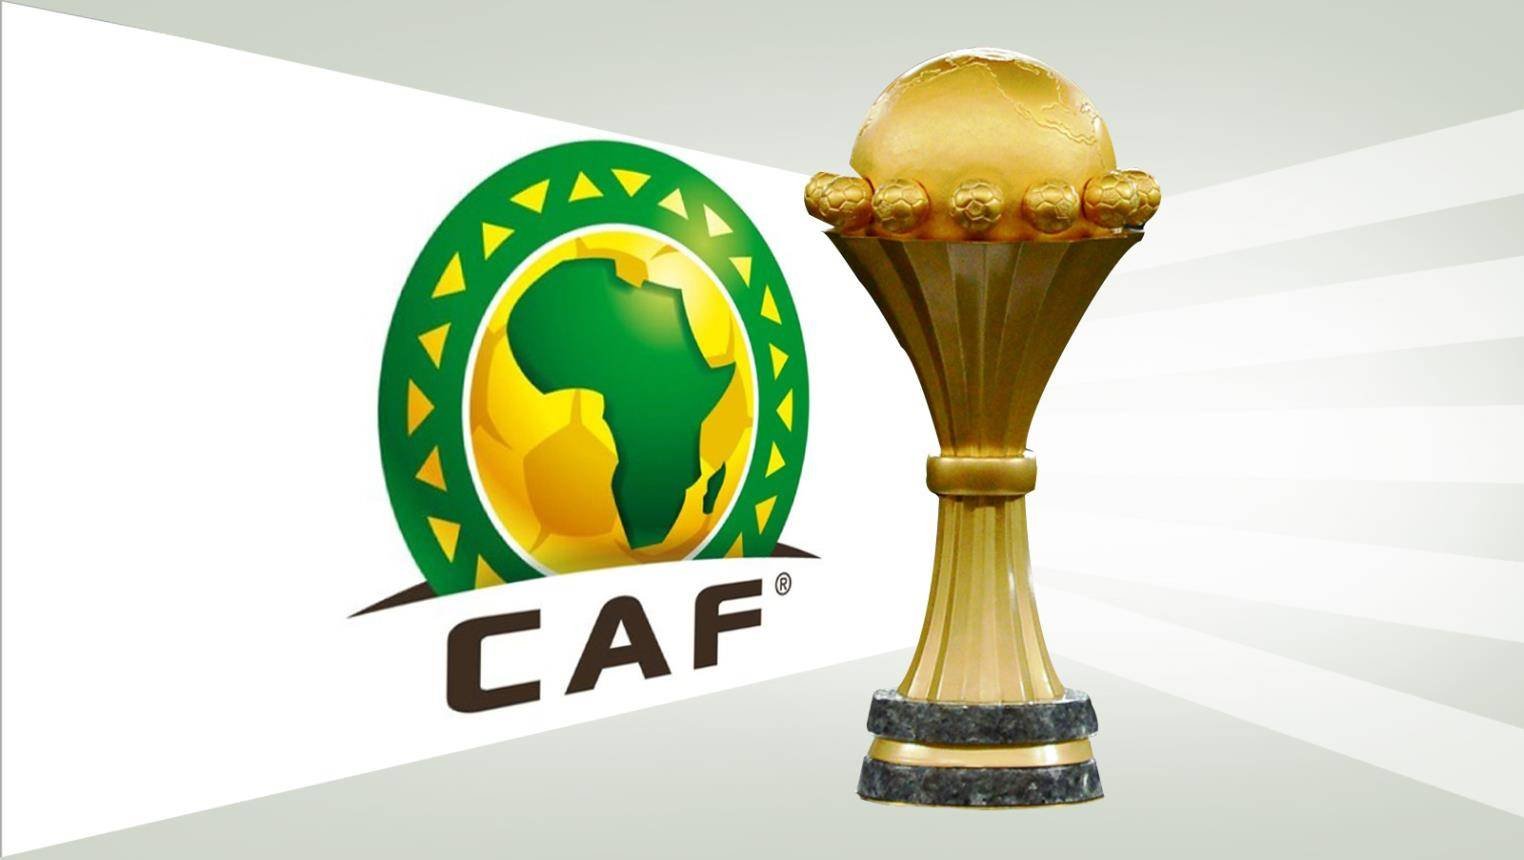  رسميا: سرقة وأختفاء كأس أمم إفريقيا من اتحاد الكرة.